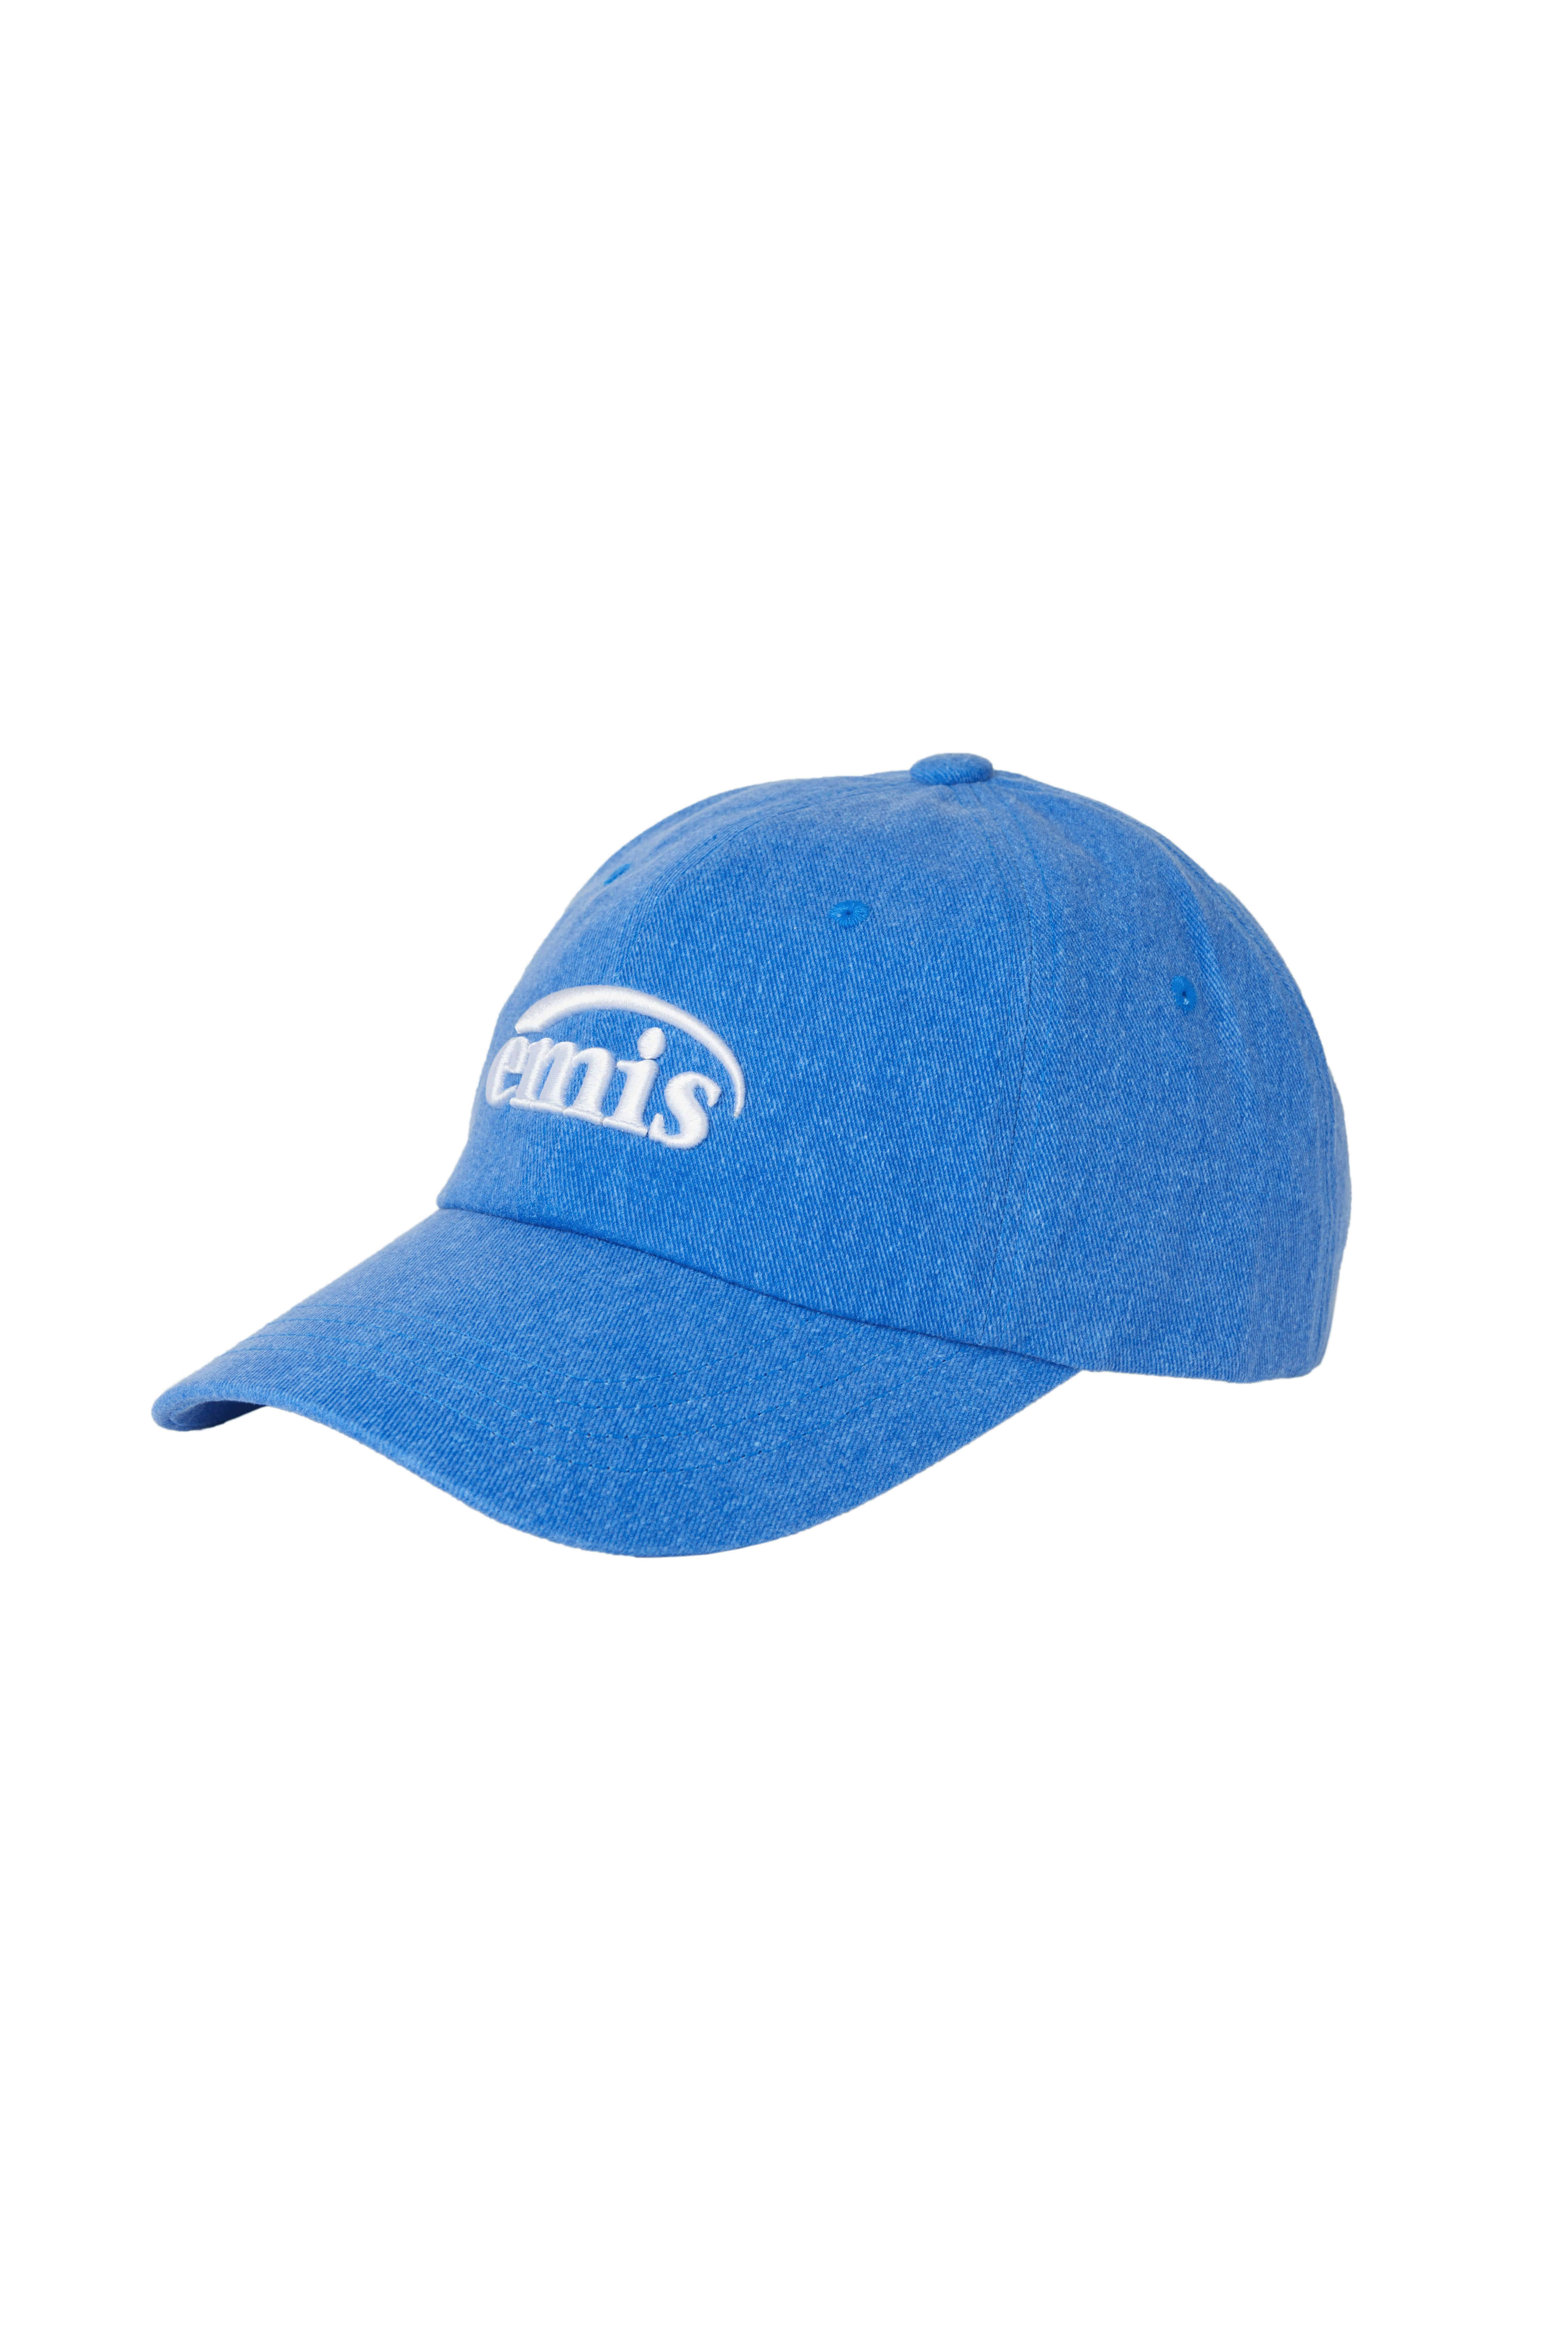 NEW LOGO PIGMENT BALL CAP-BLUE